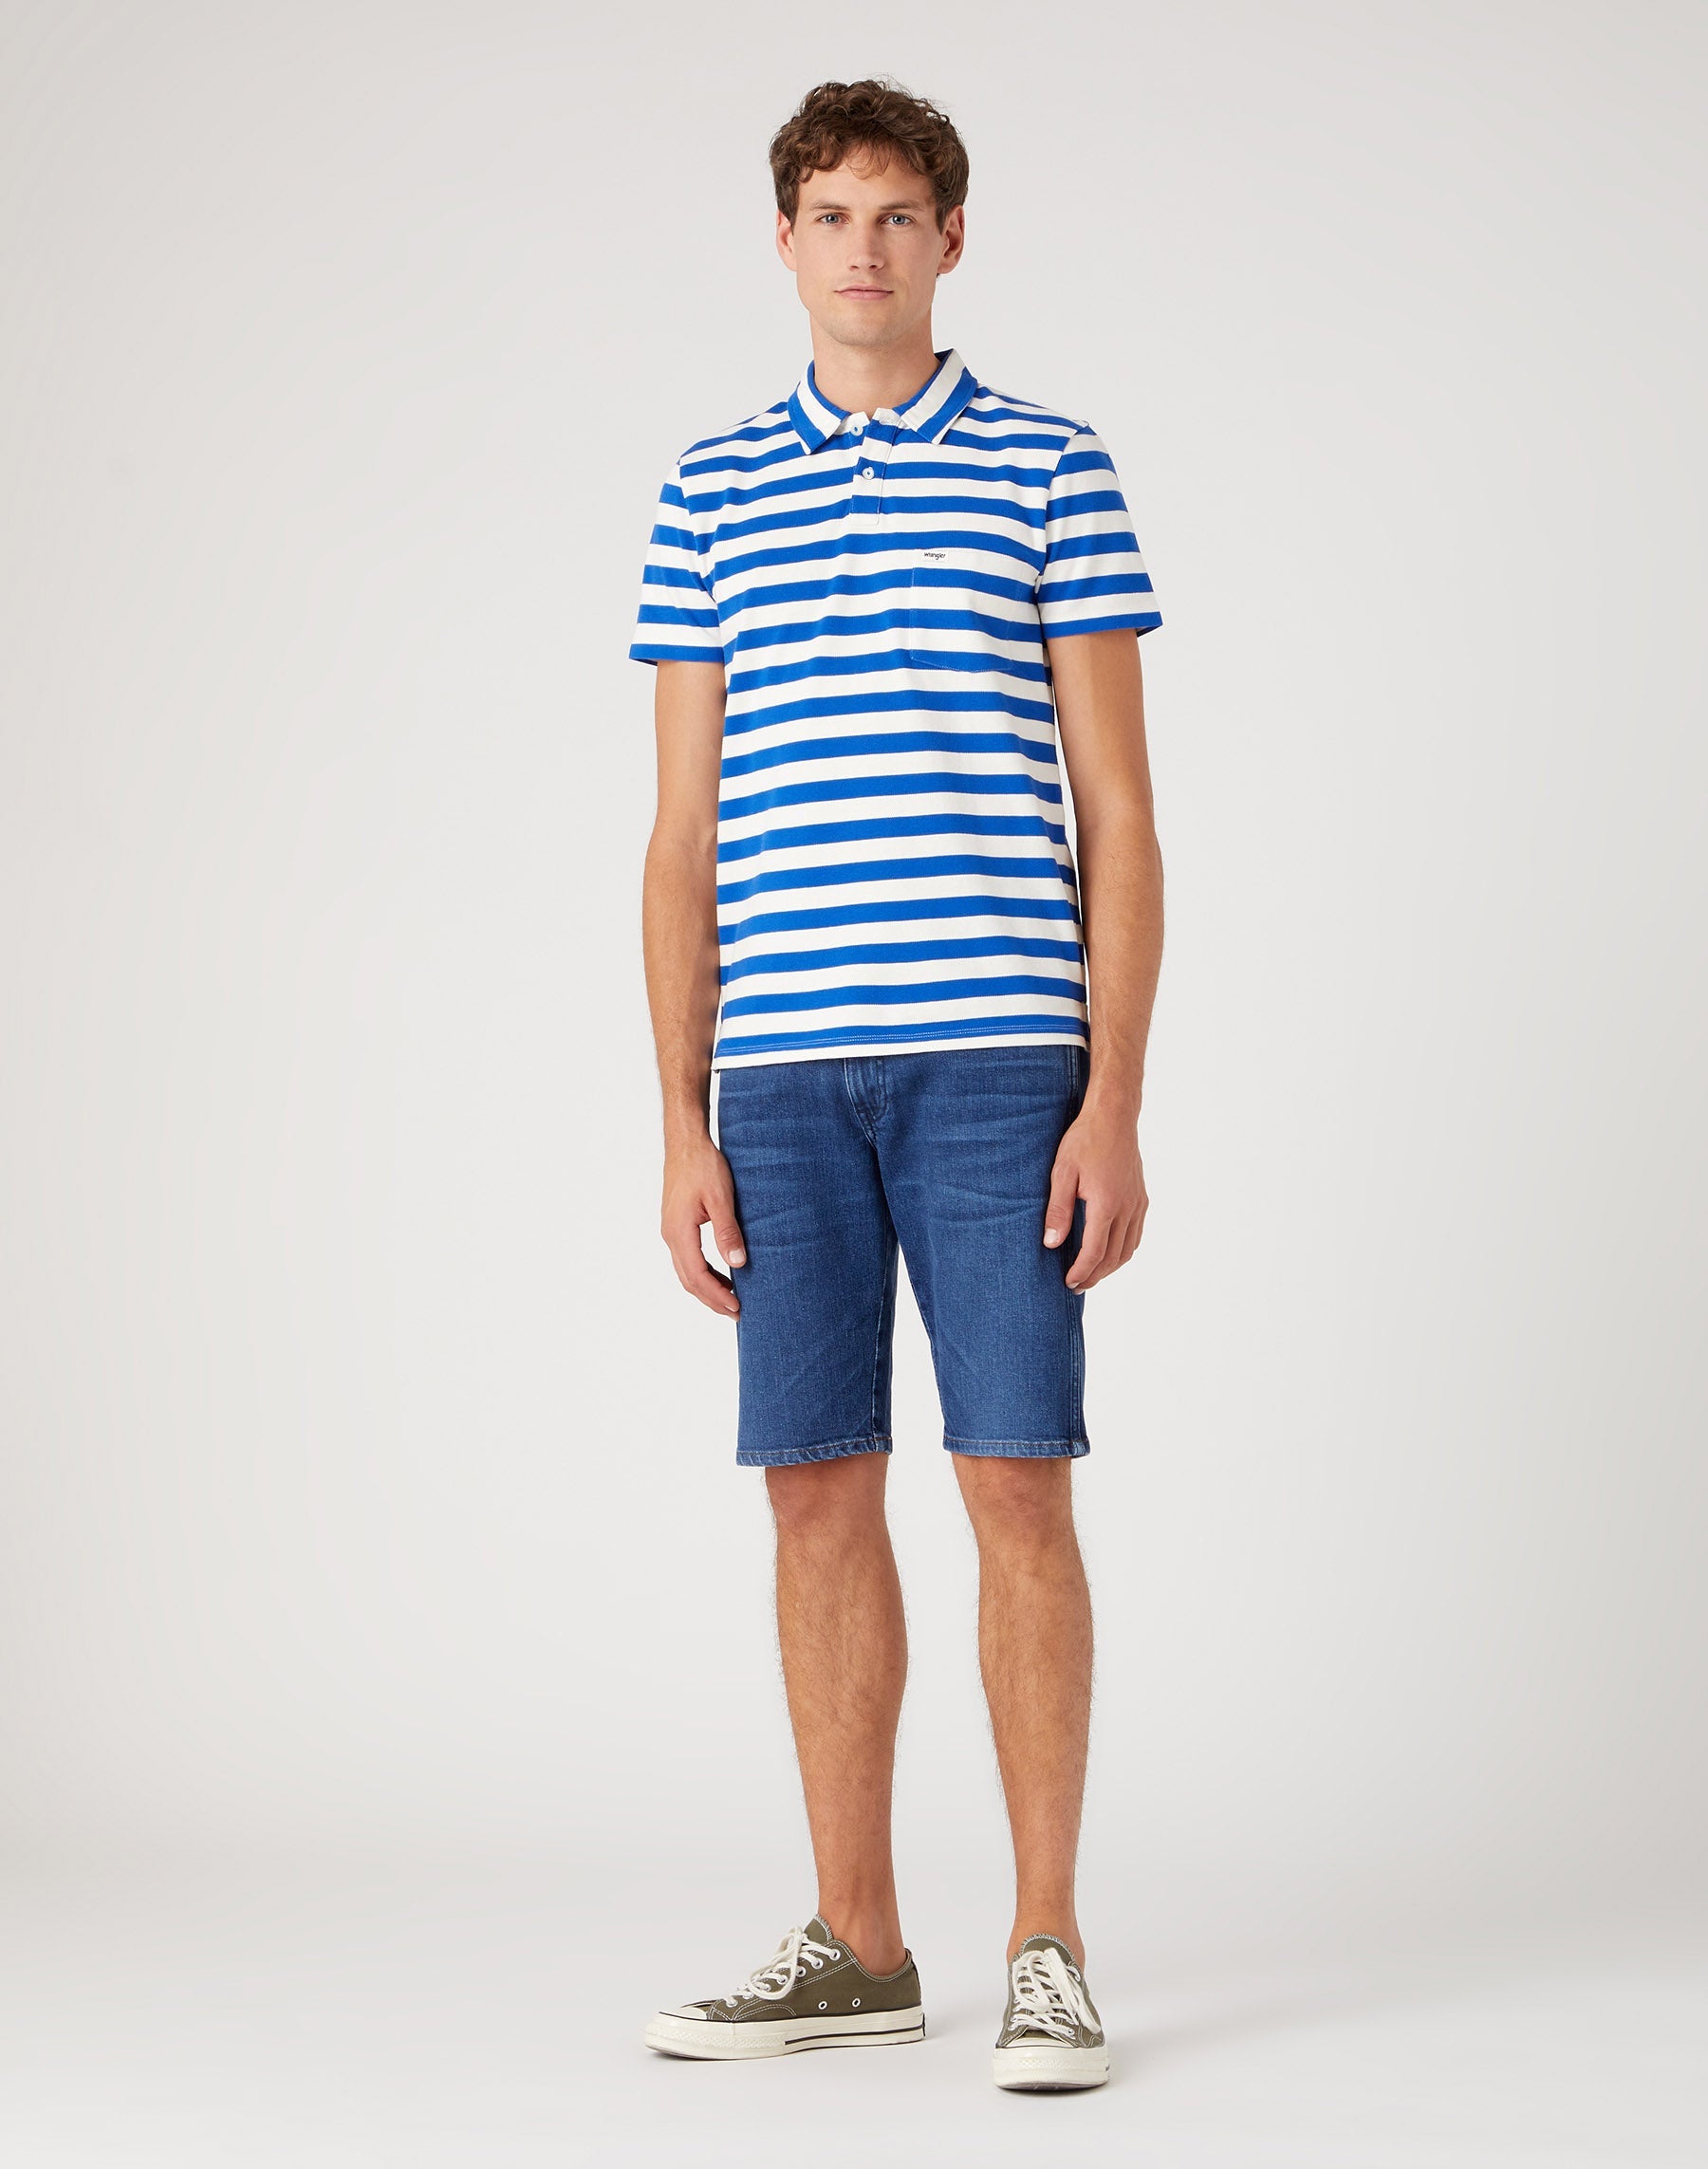 Stripe Polo Shirt in Wrangler Blue Polos Wrangler   